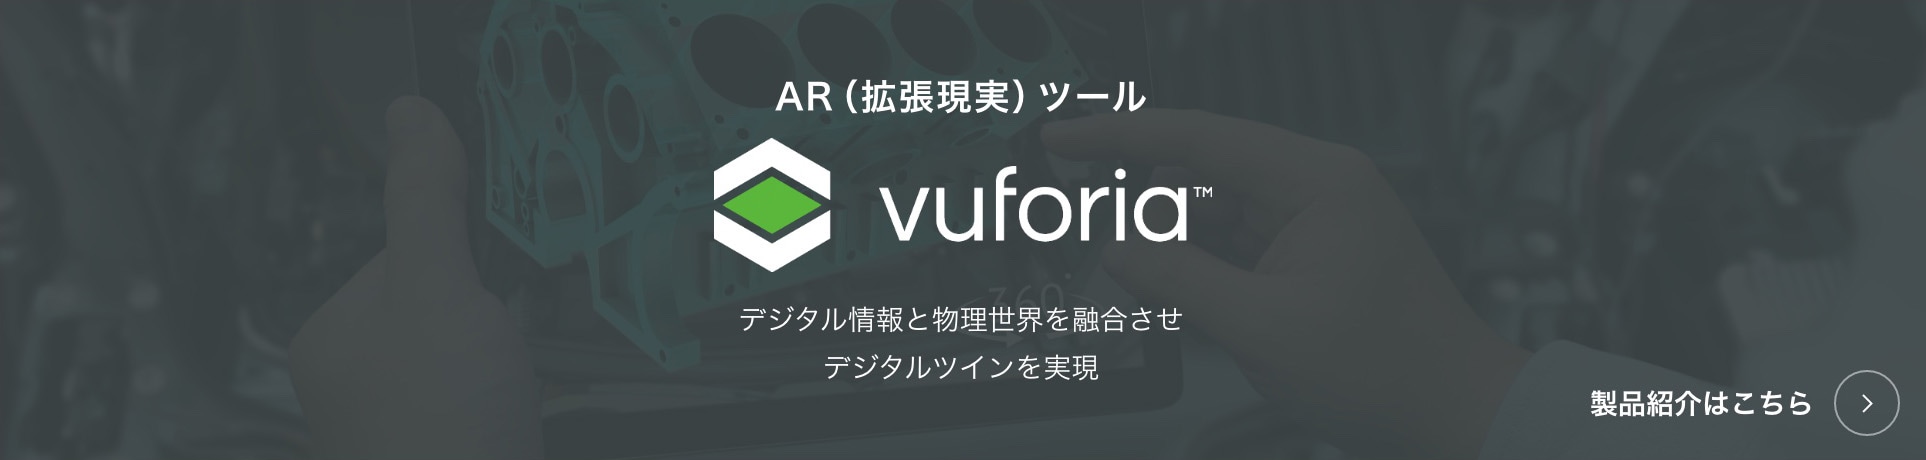 Vuforia 製品紹介